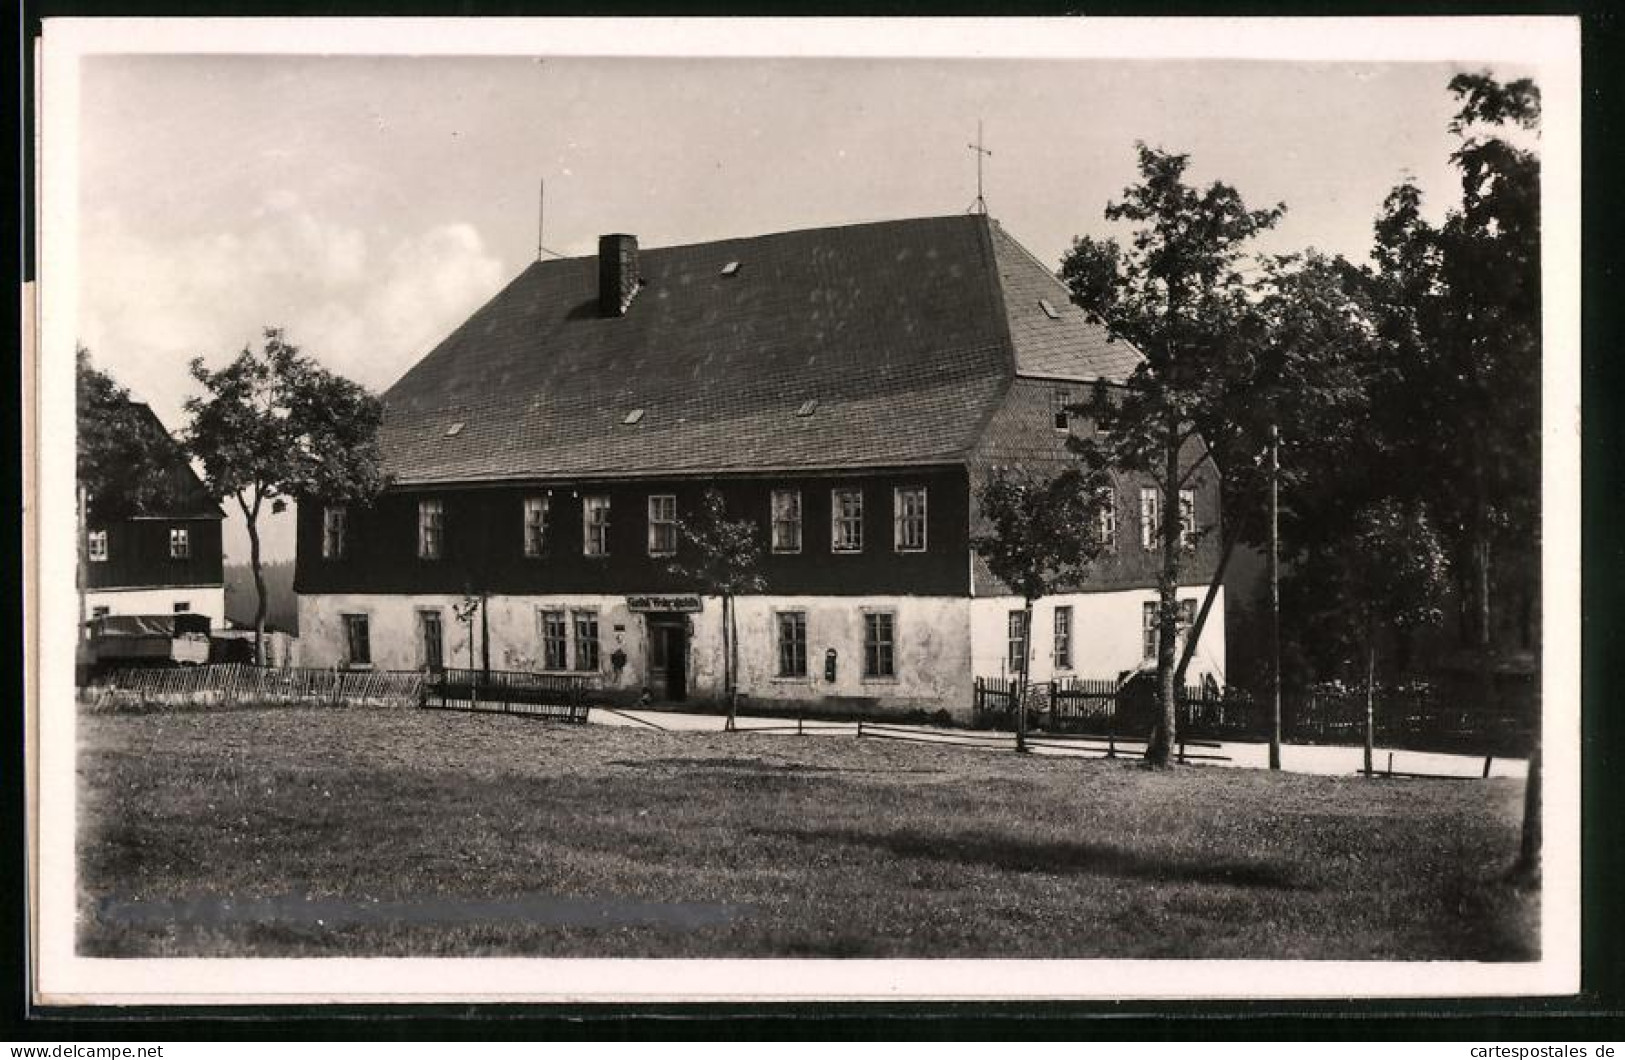 Fotografie Brück & Sohn Meissen, Ansicht Carlsfeld I. Erzg., Blick Auf Den Gasthof Weitersglashütte  - Orte